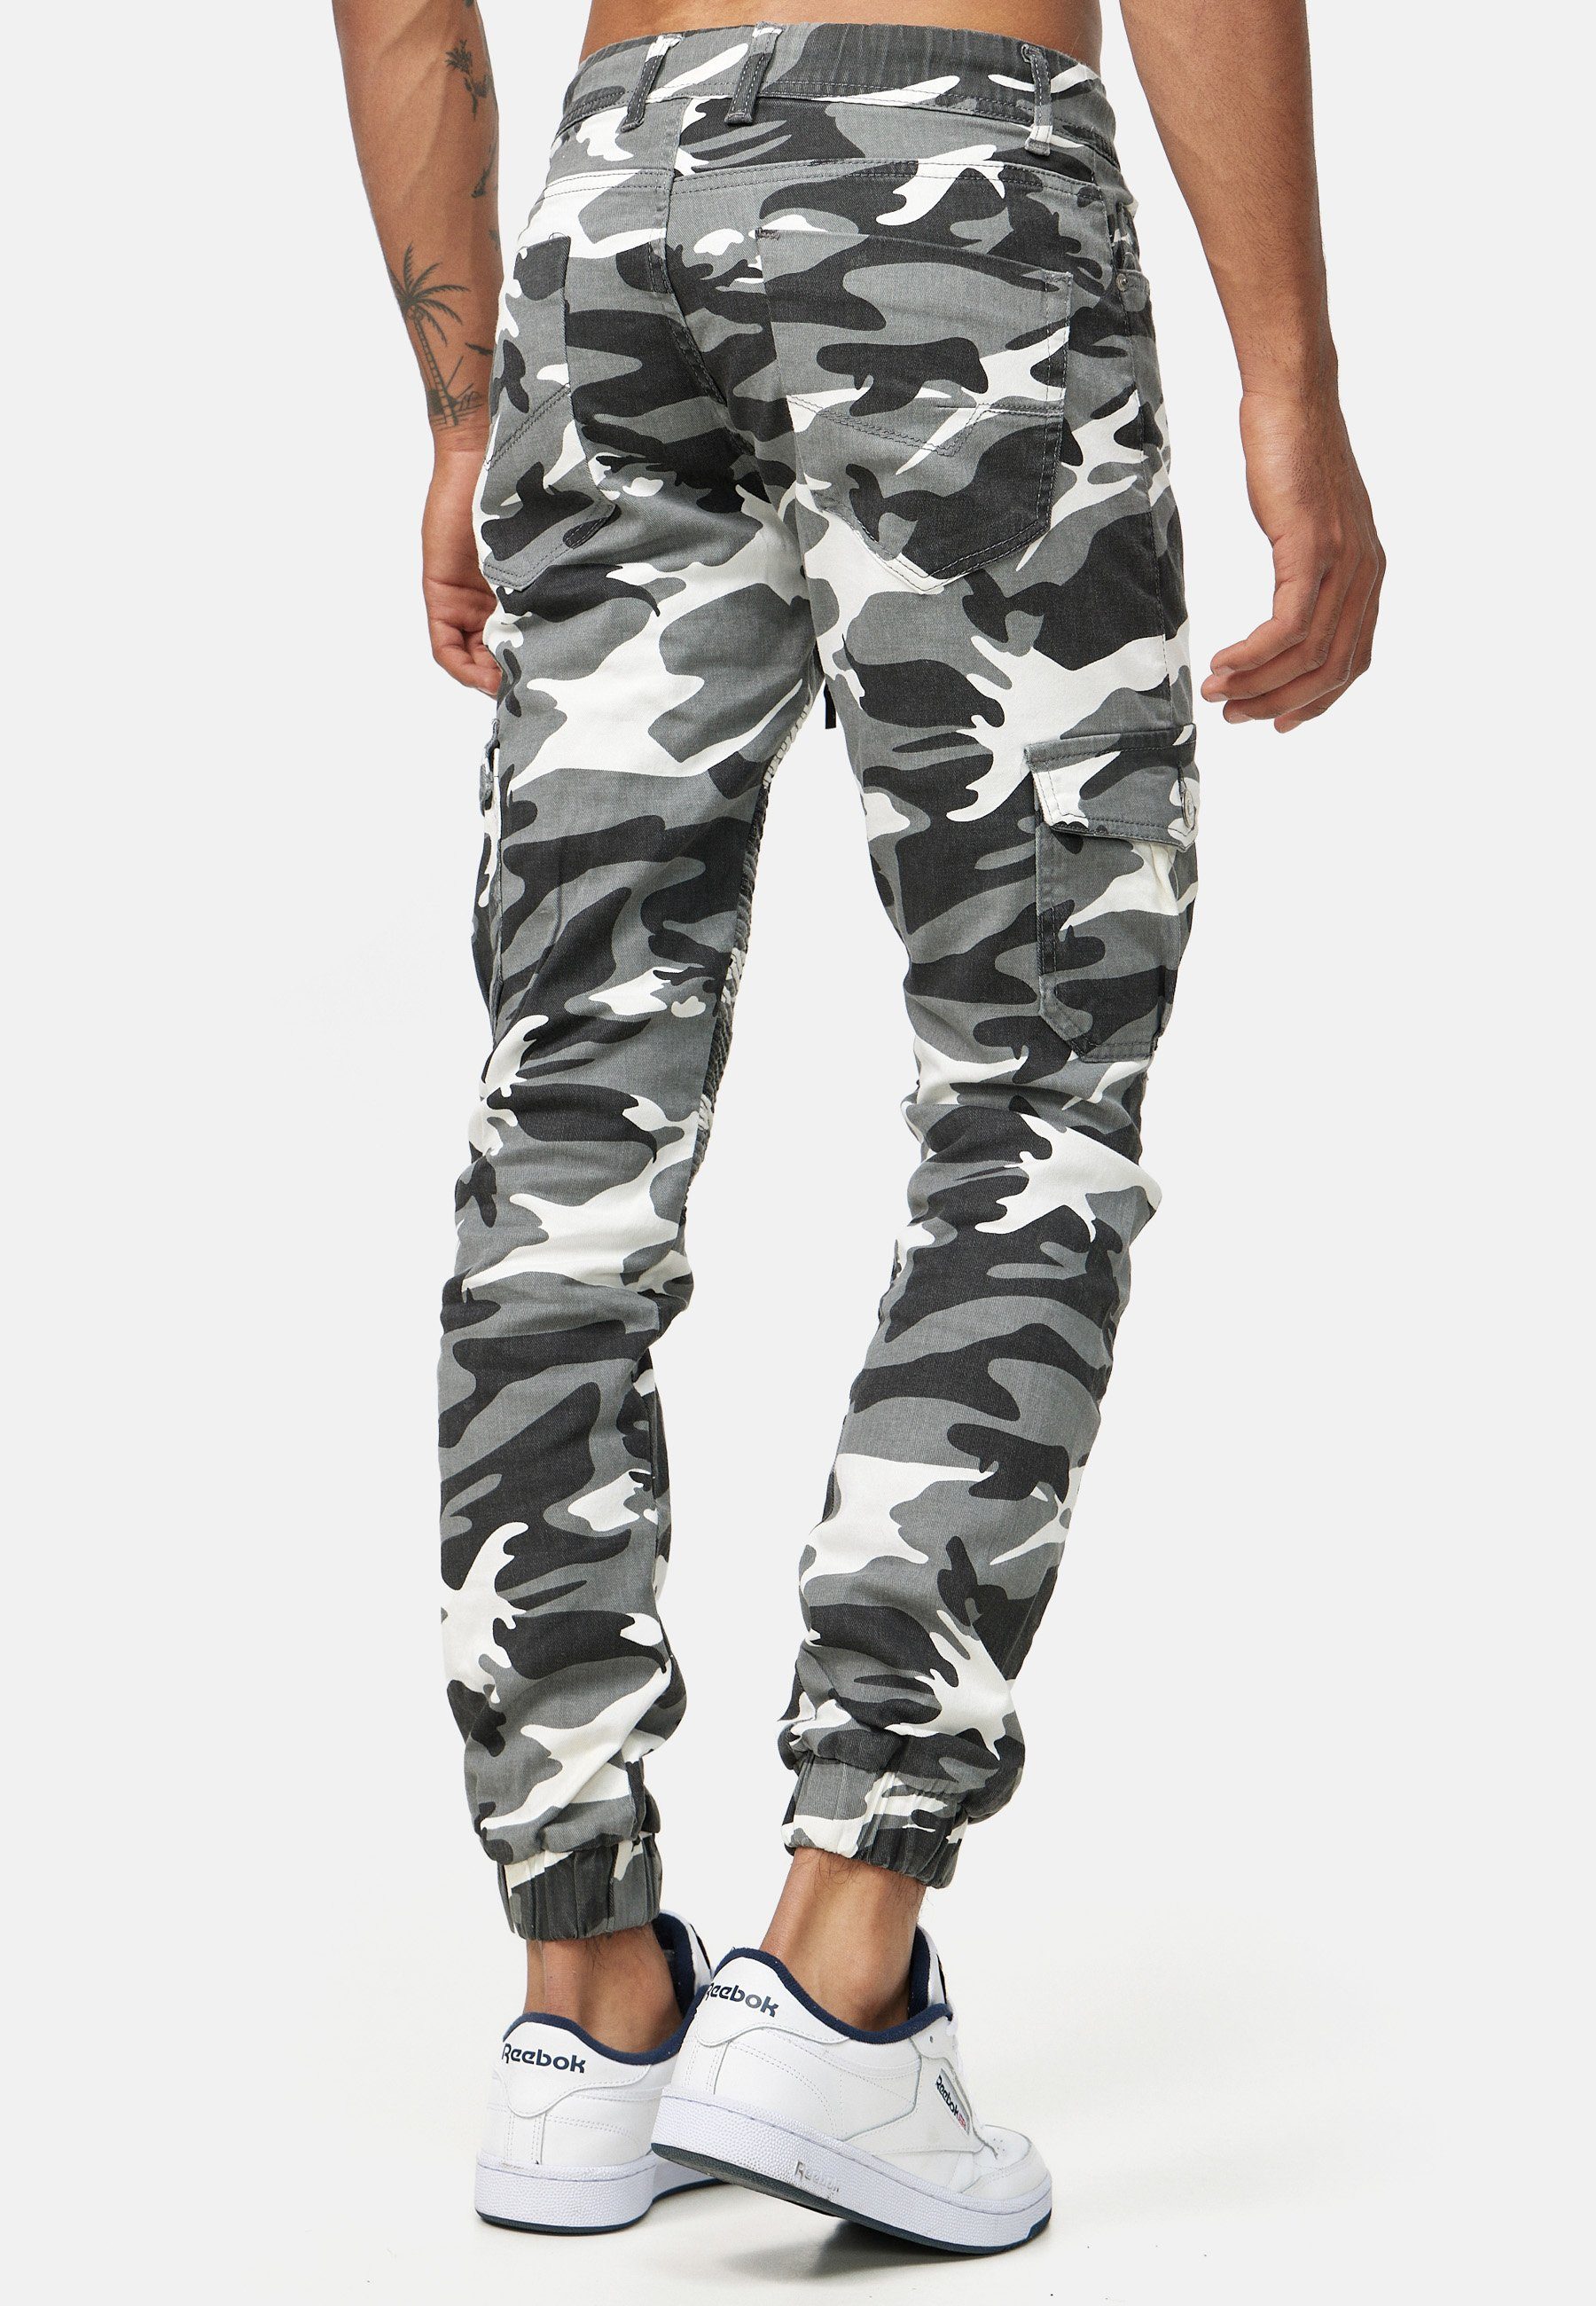 Slim Herren Camouflage Code47 Slim Jeans Männer Chinohose Hose Slim-fit-Jeans 3207C Weiß Fit Designer Chino